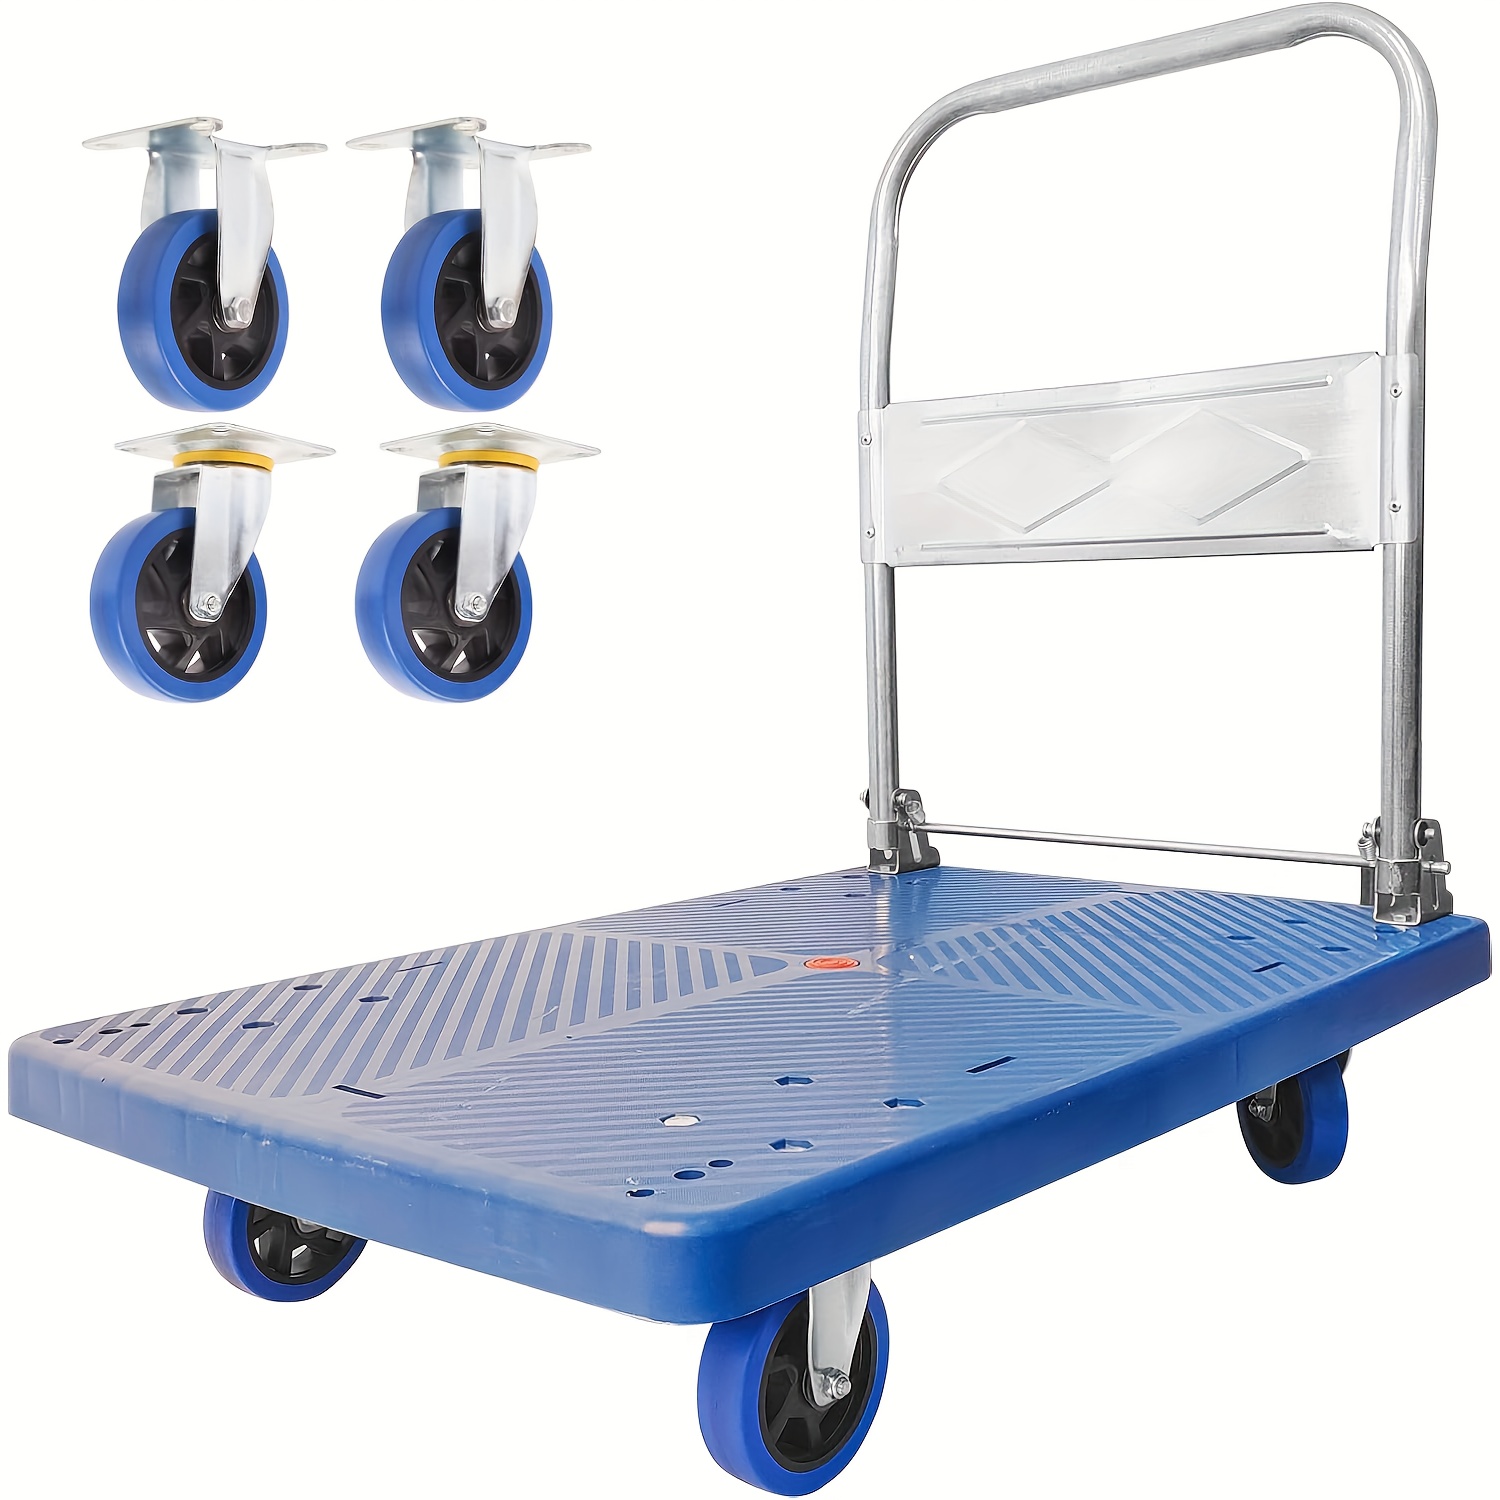 Carrito de compras plegable, carrito plegable de dos niveles con una caja,  carrito utilitario resistente con ruedas giratorias giratorias de 360°